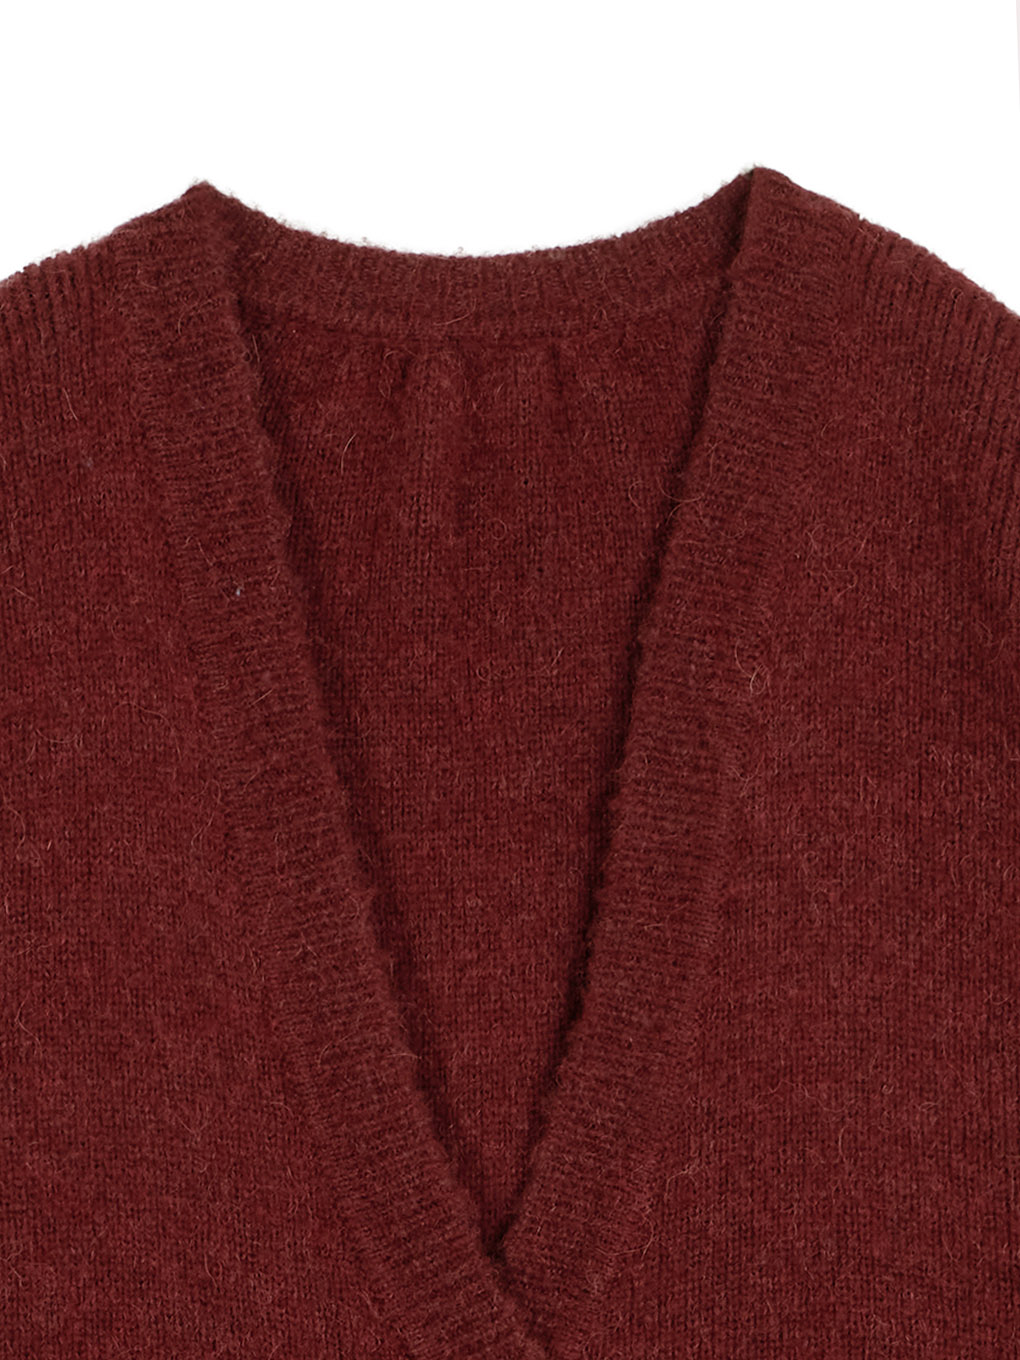 新品Ameri vintage knit cardigan ニット カーディガン新品タグ付き